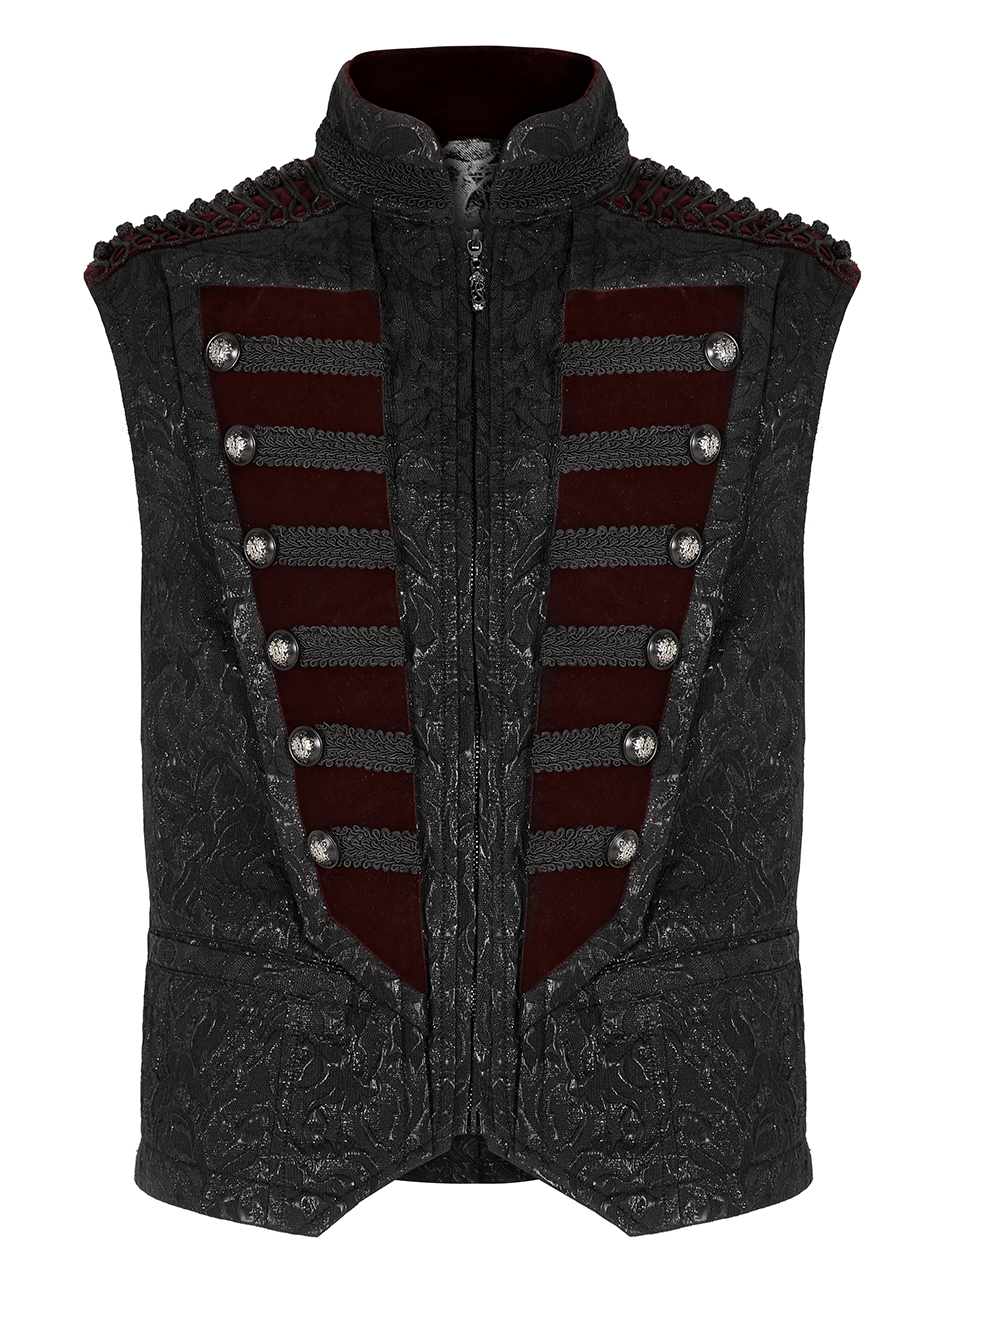 Victorian Jacquard Velvet Men's Gothic Waistcoat - HARD'N'HEAVY